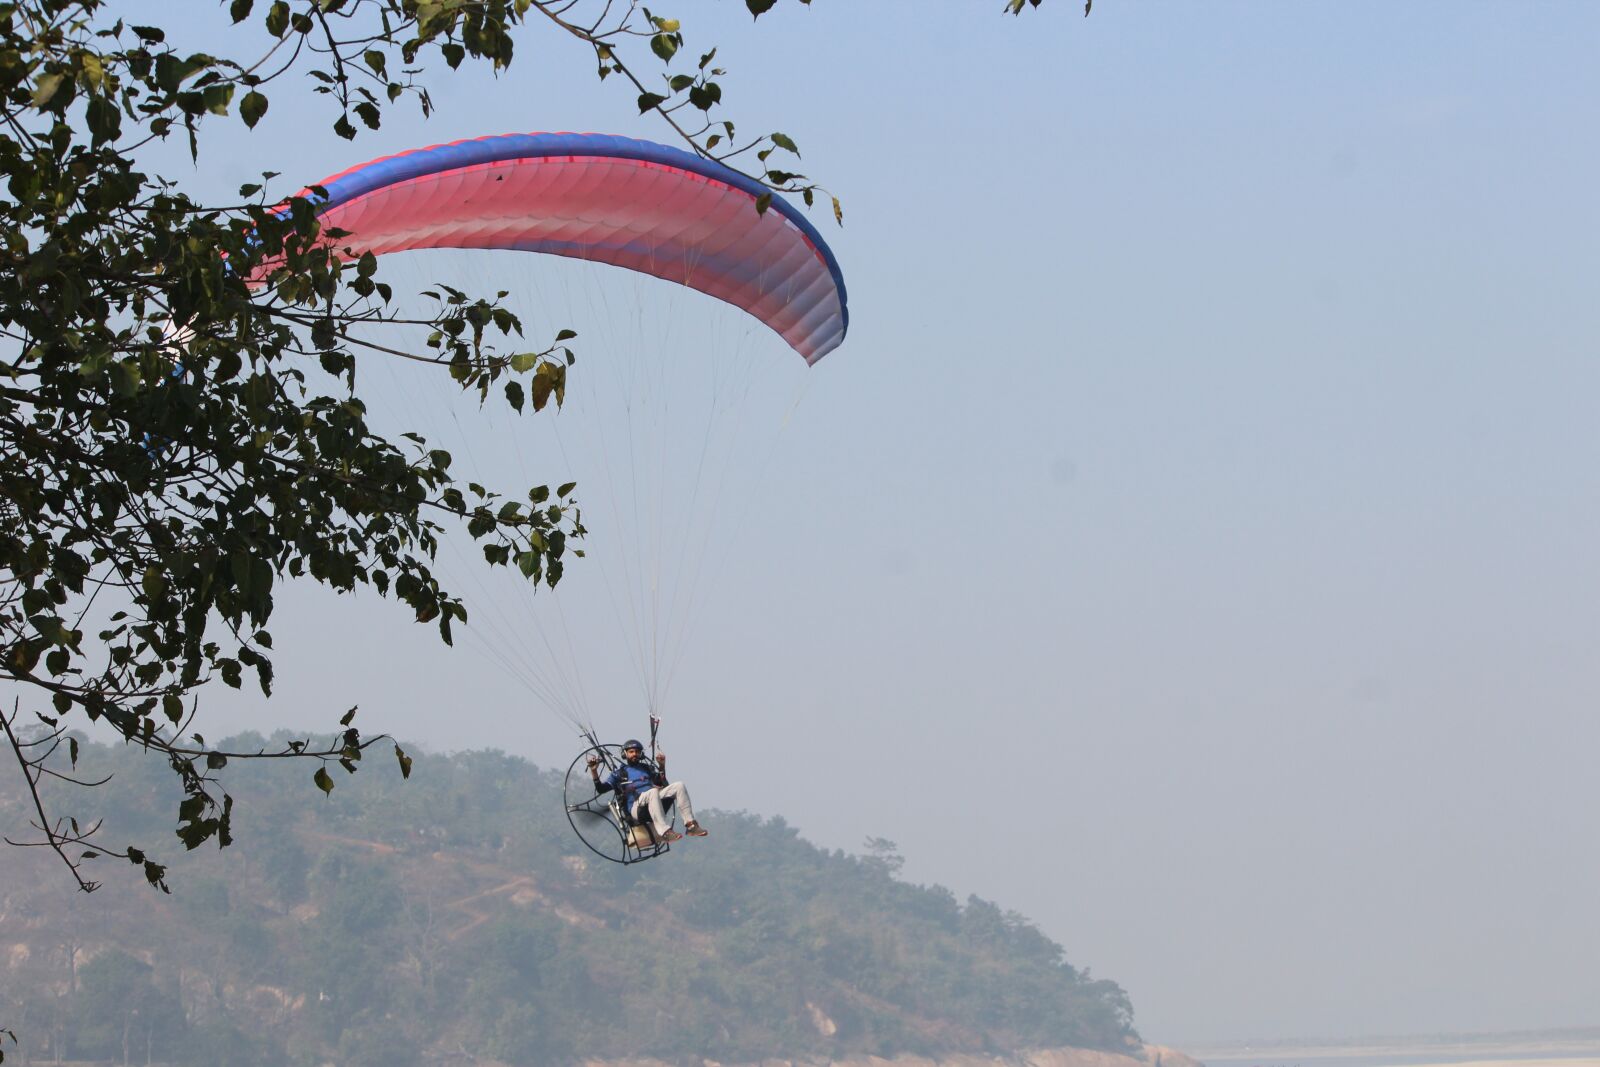 Canon EOS 1200D (EOS Rebel T5 / EOS Kiss X70 / EOS Hi) sample photo. Paragliding, fun, activity photography